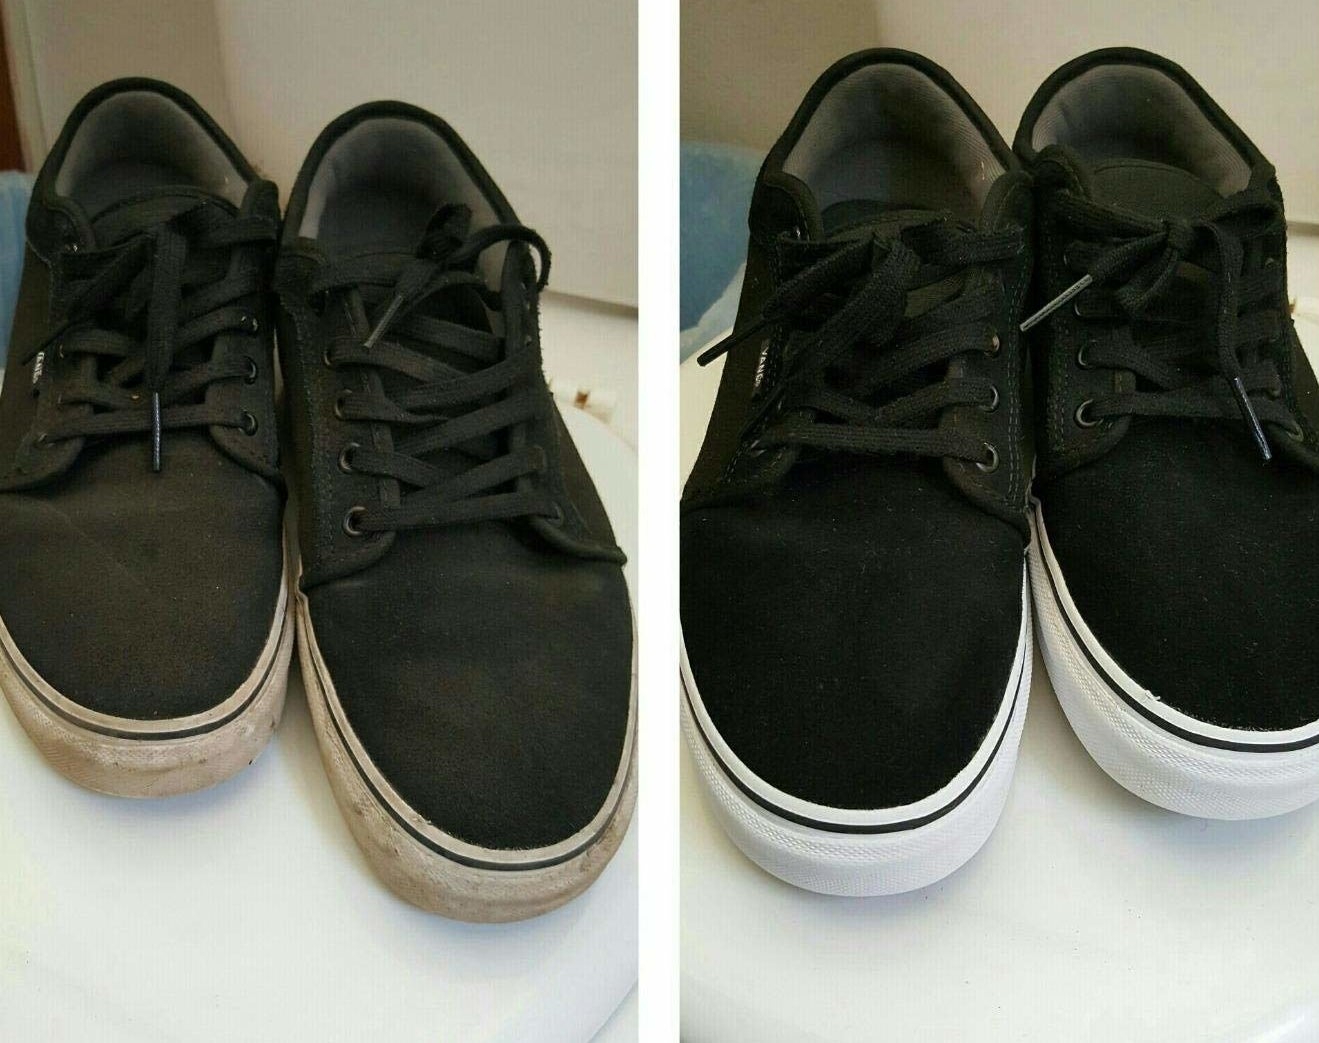 评论照片显示一双鞋之前和之后清洁与工具包。脏鞋完全恢复了新面貌